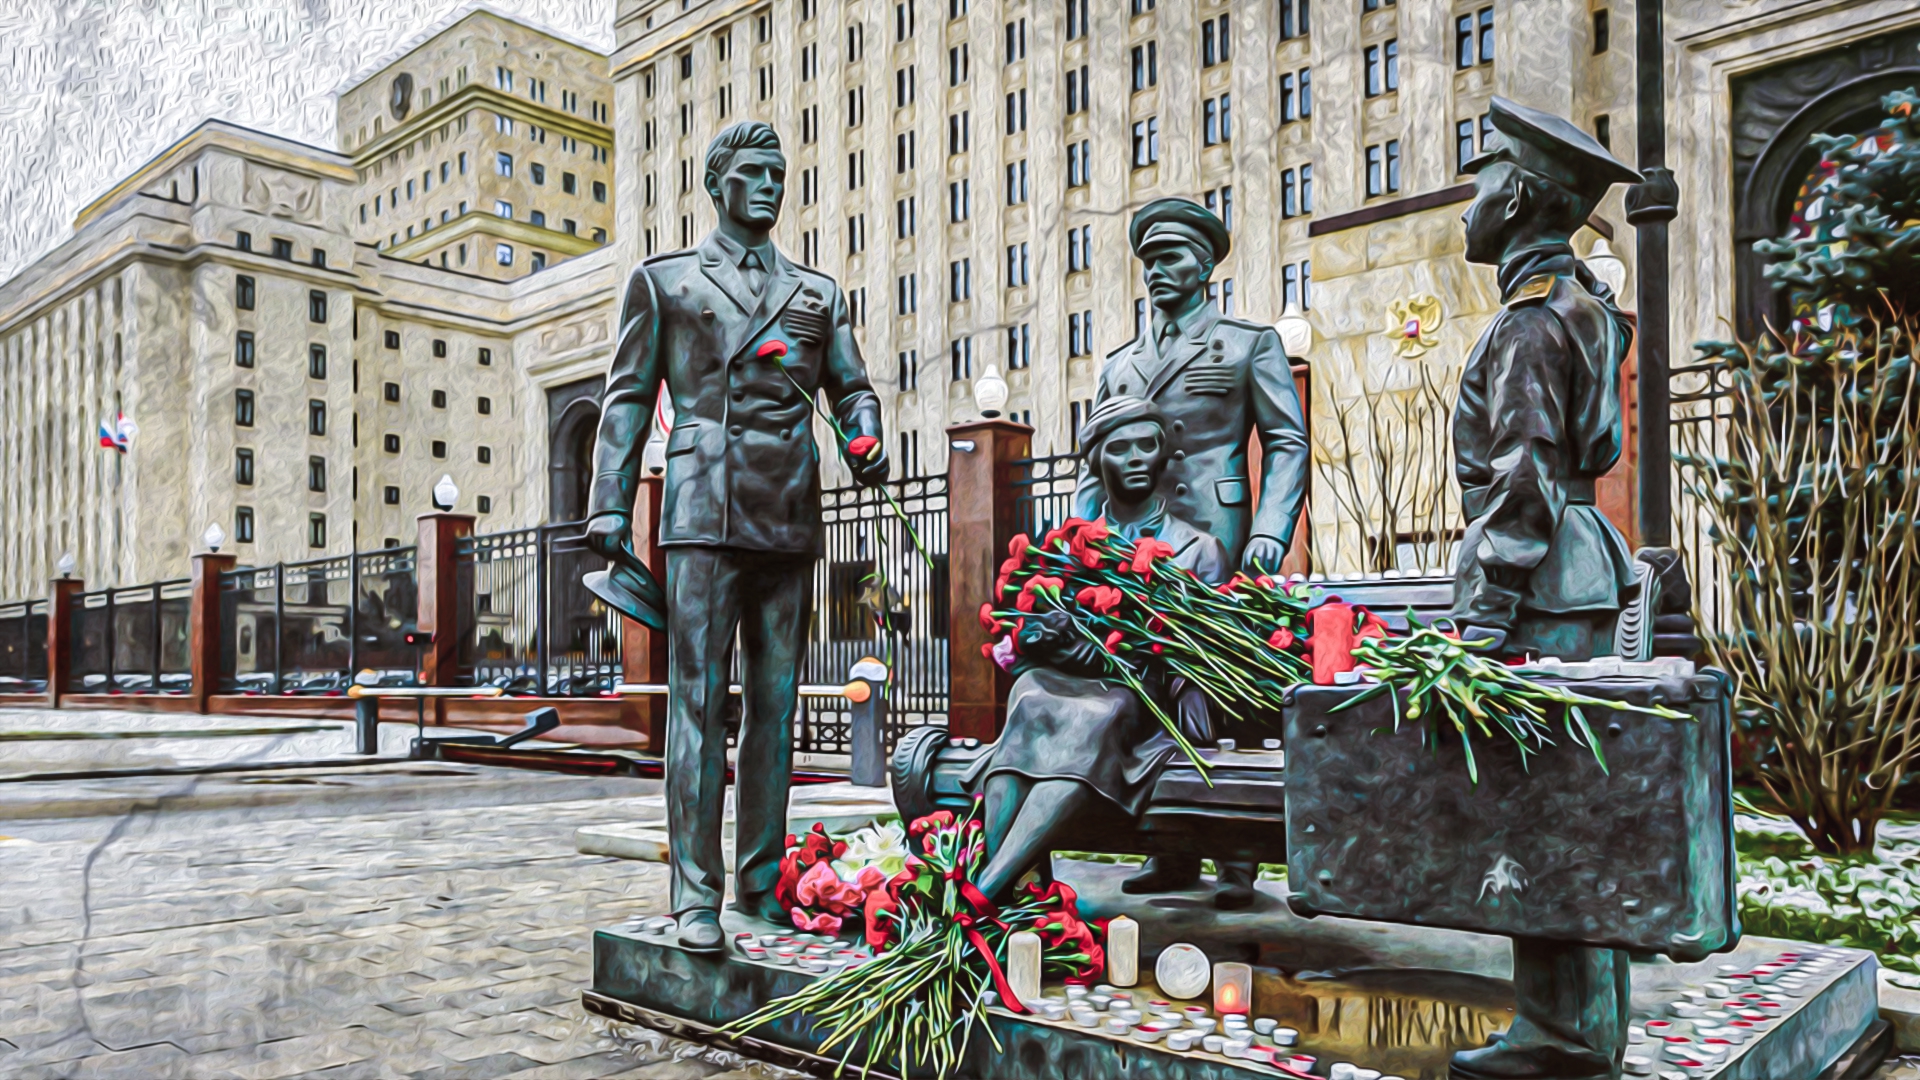 офицеры памятник в москве